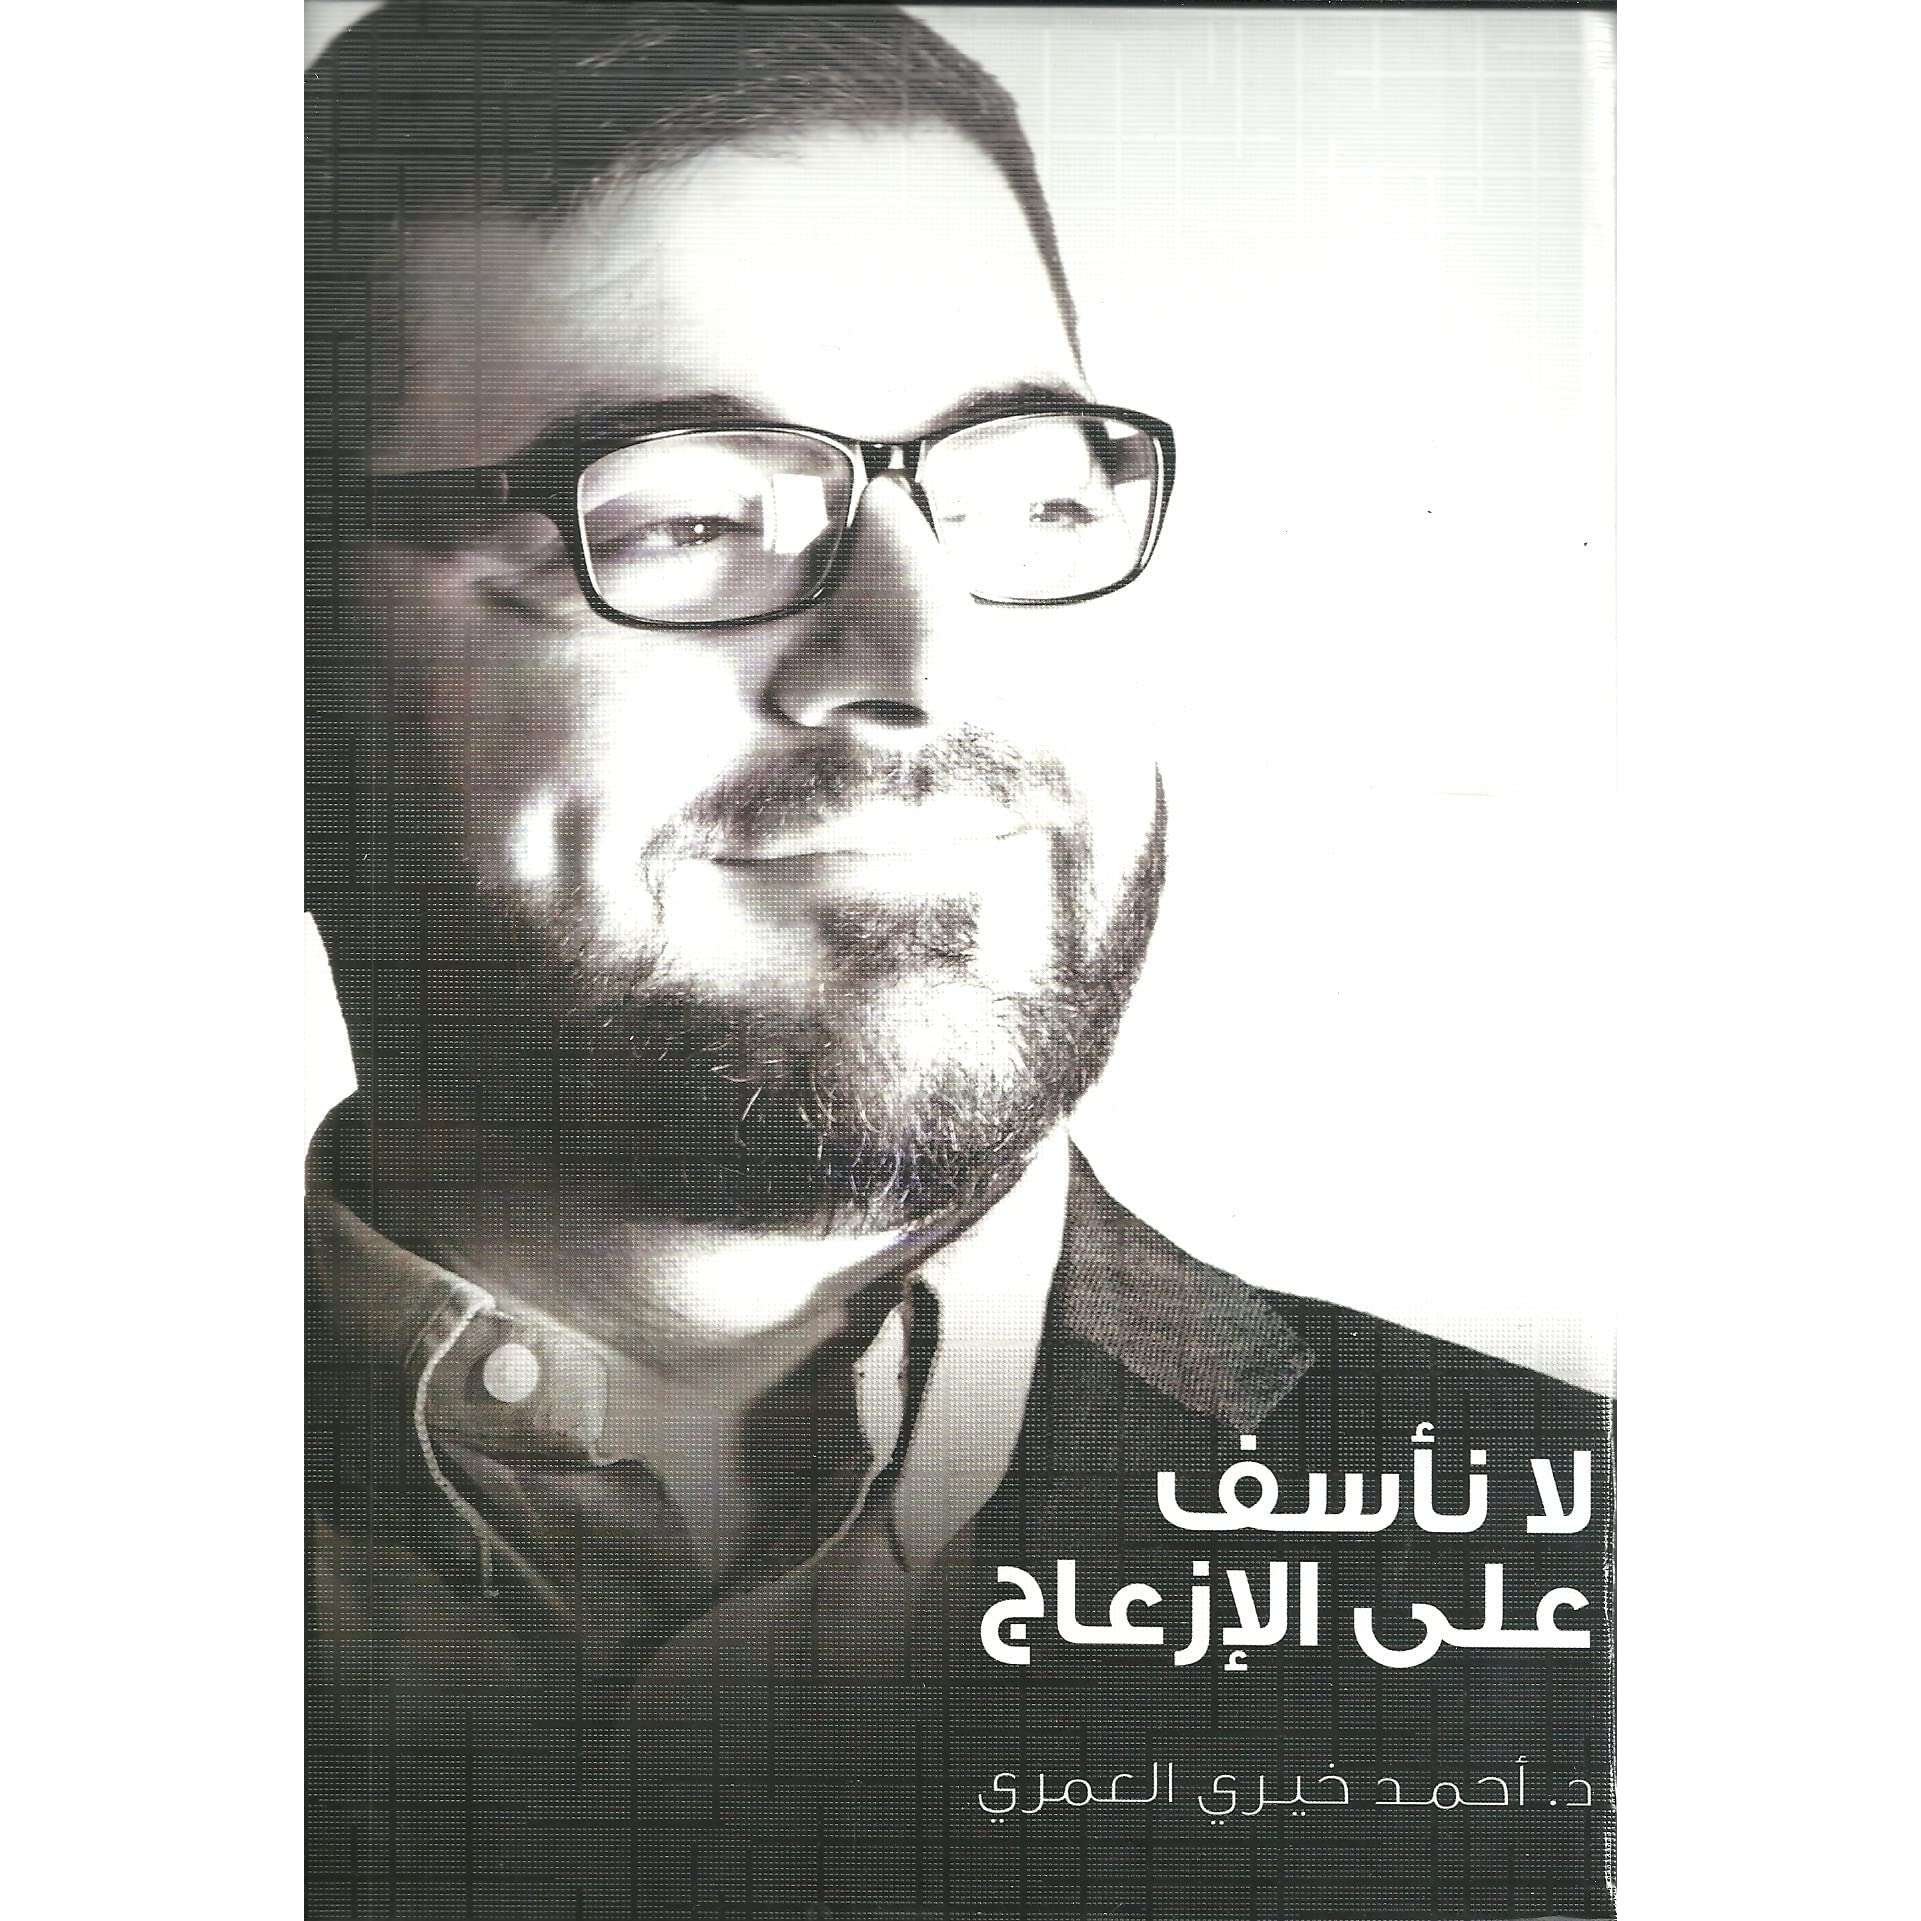 كتاب لا نأسف على الإزعاج PDF للكاتب أحمد خيري العمري